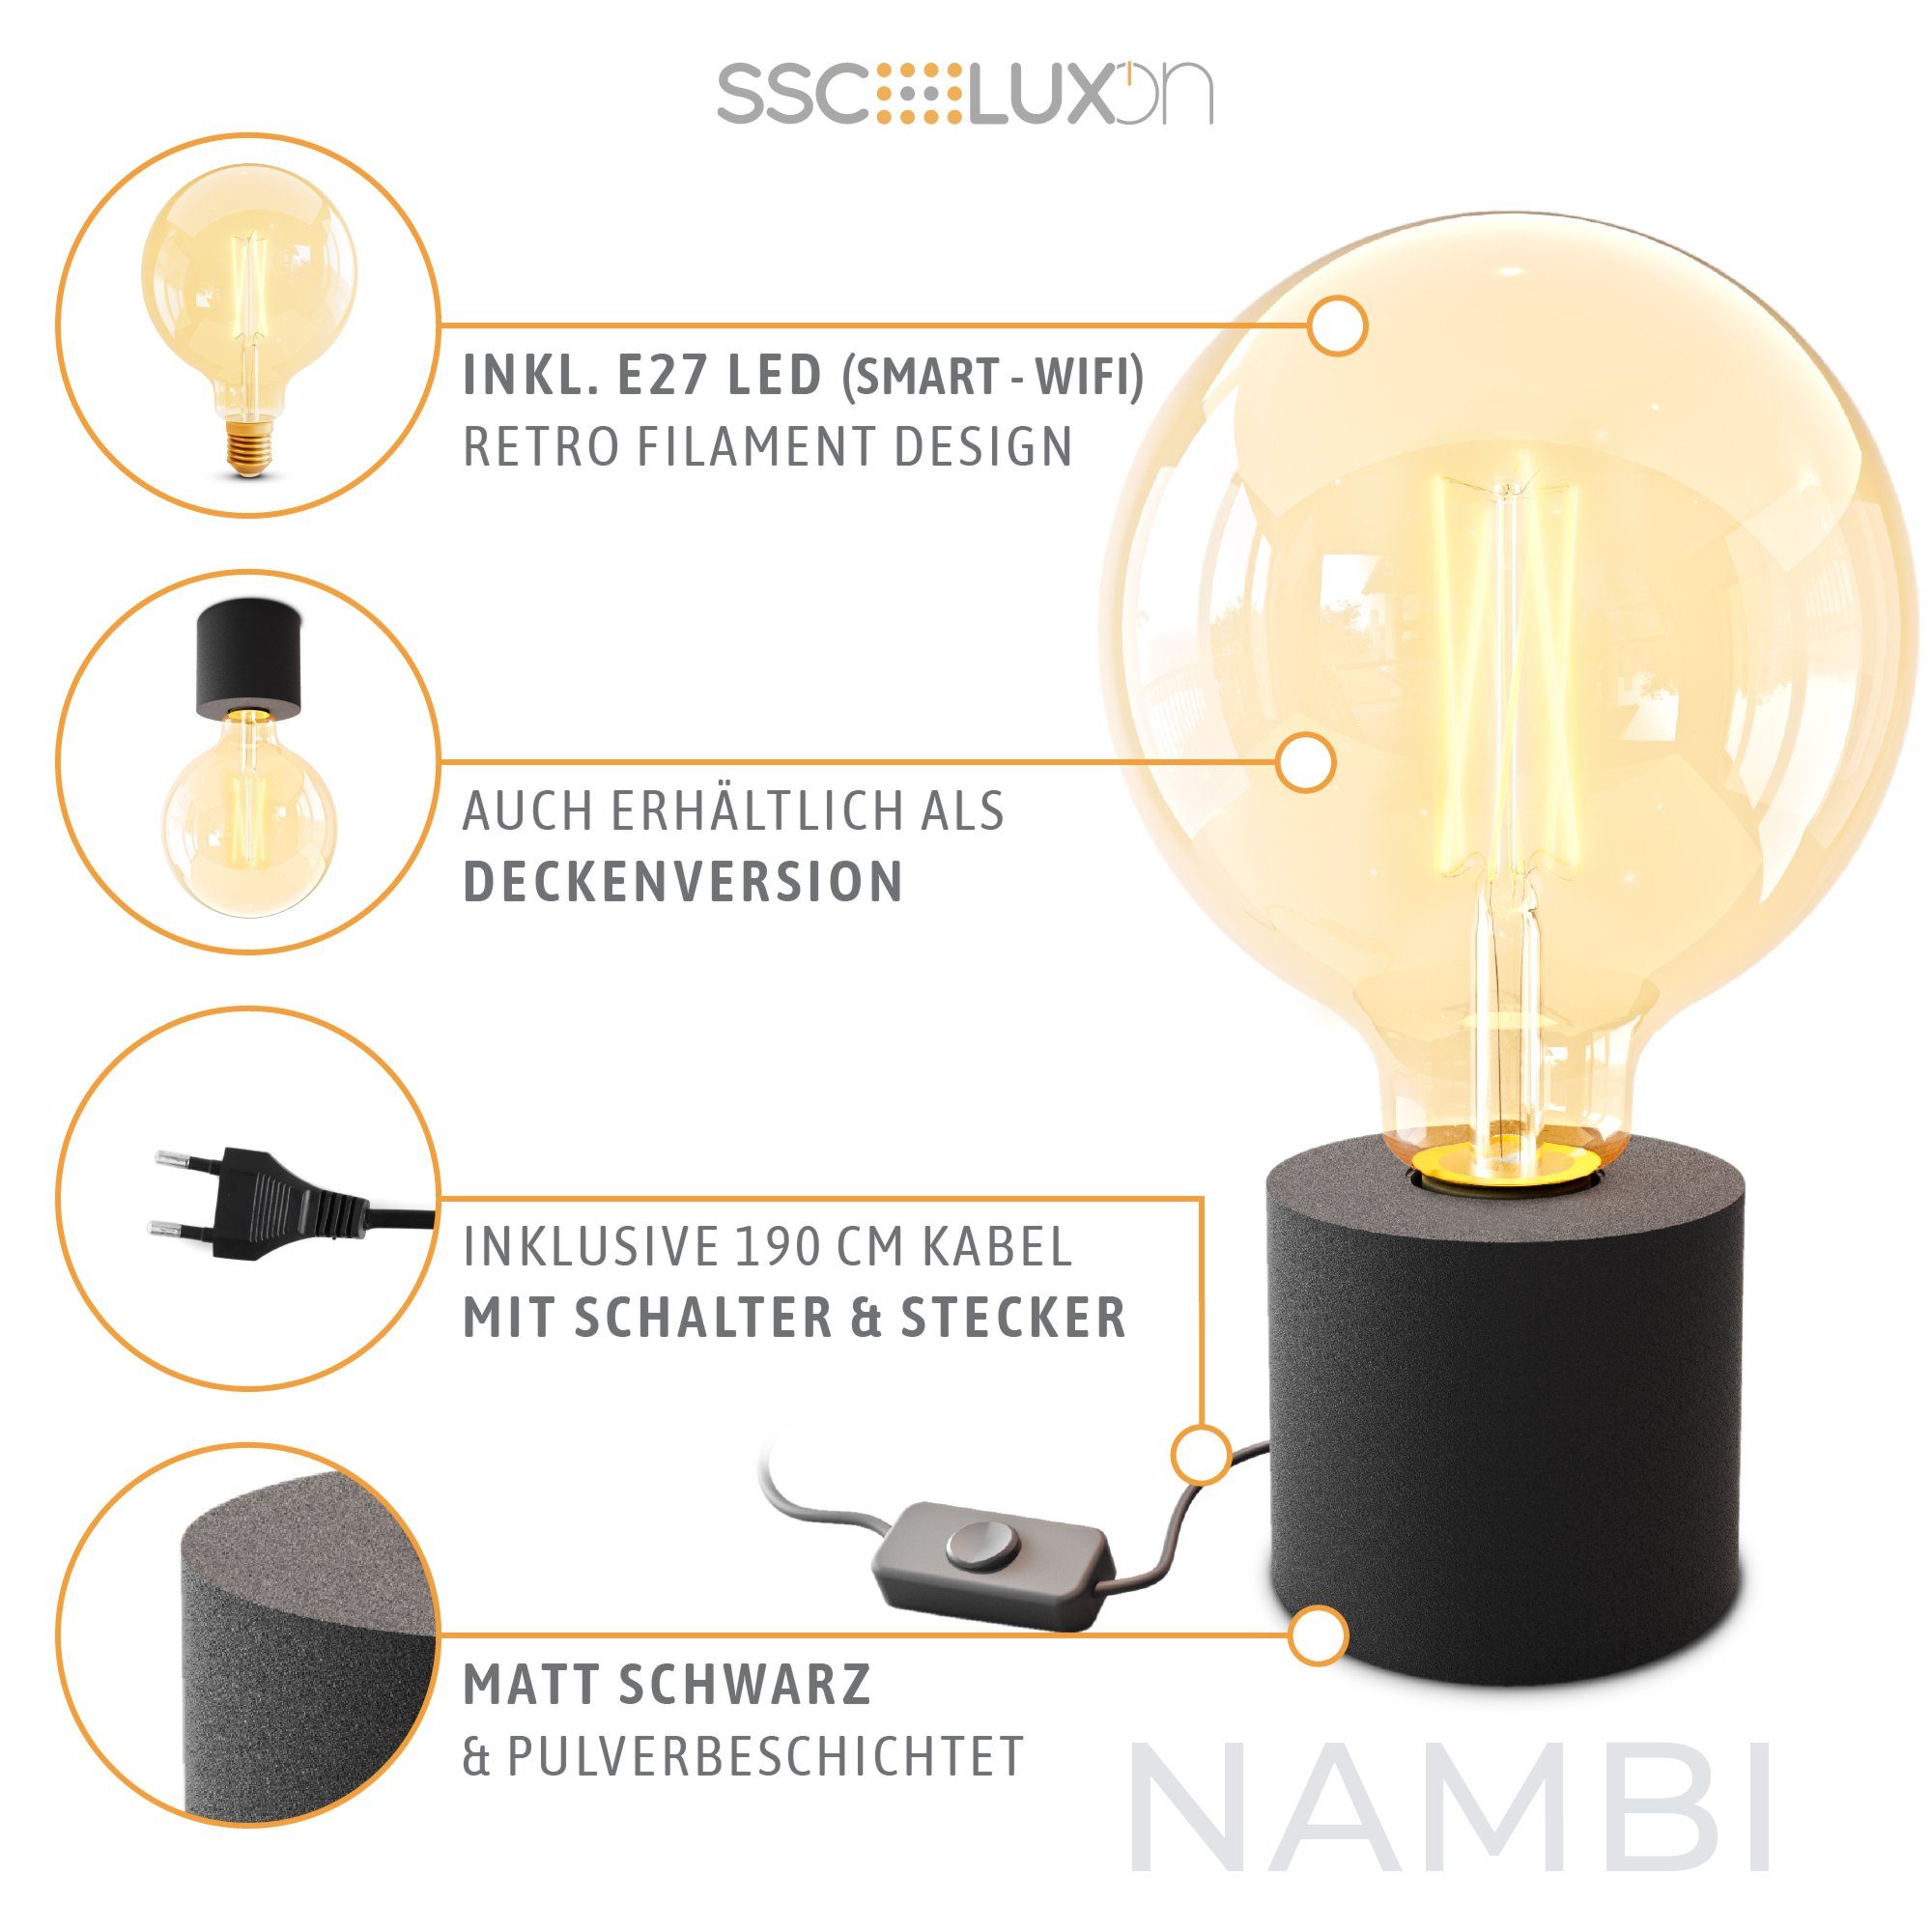 SSC-LUXon LED Bilderleuchte NAMBI Stecker Tageslicht bis Warmweiß Wand- & & schwarz E27, mit Kabel Tischleuchte mit